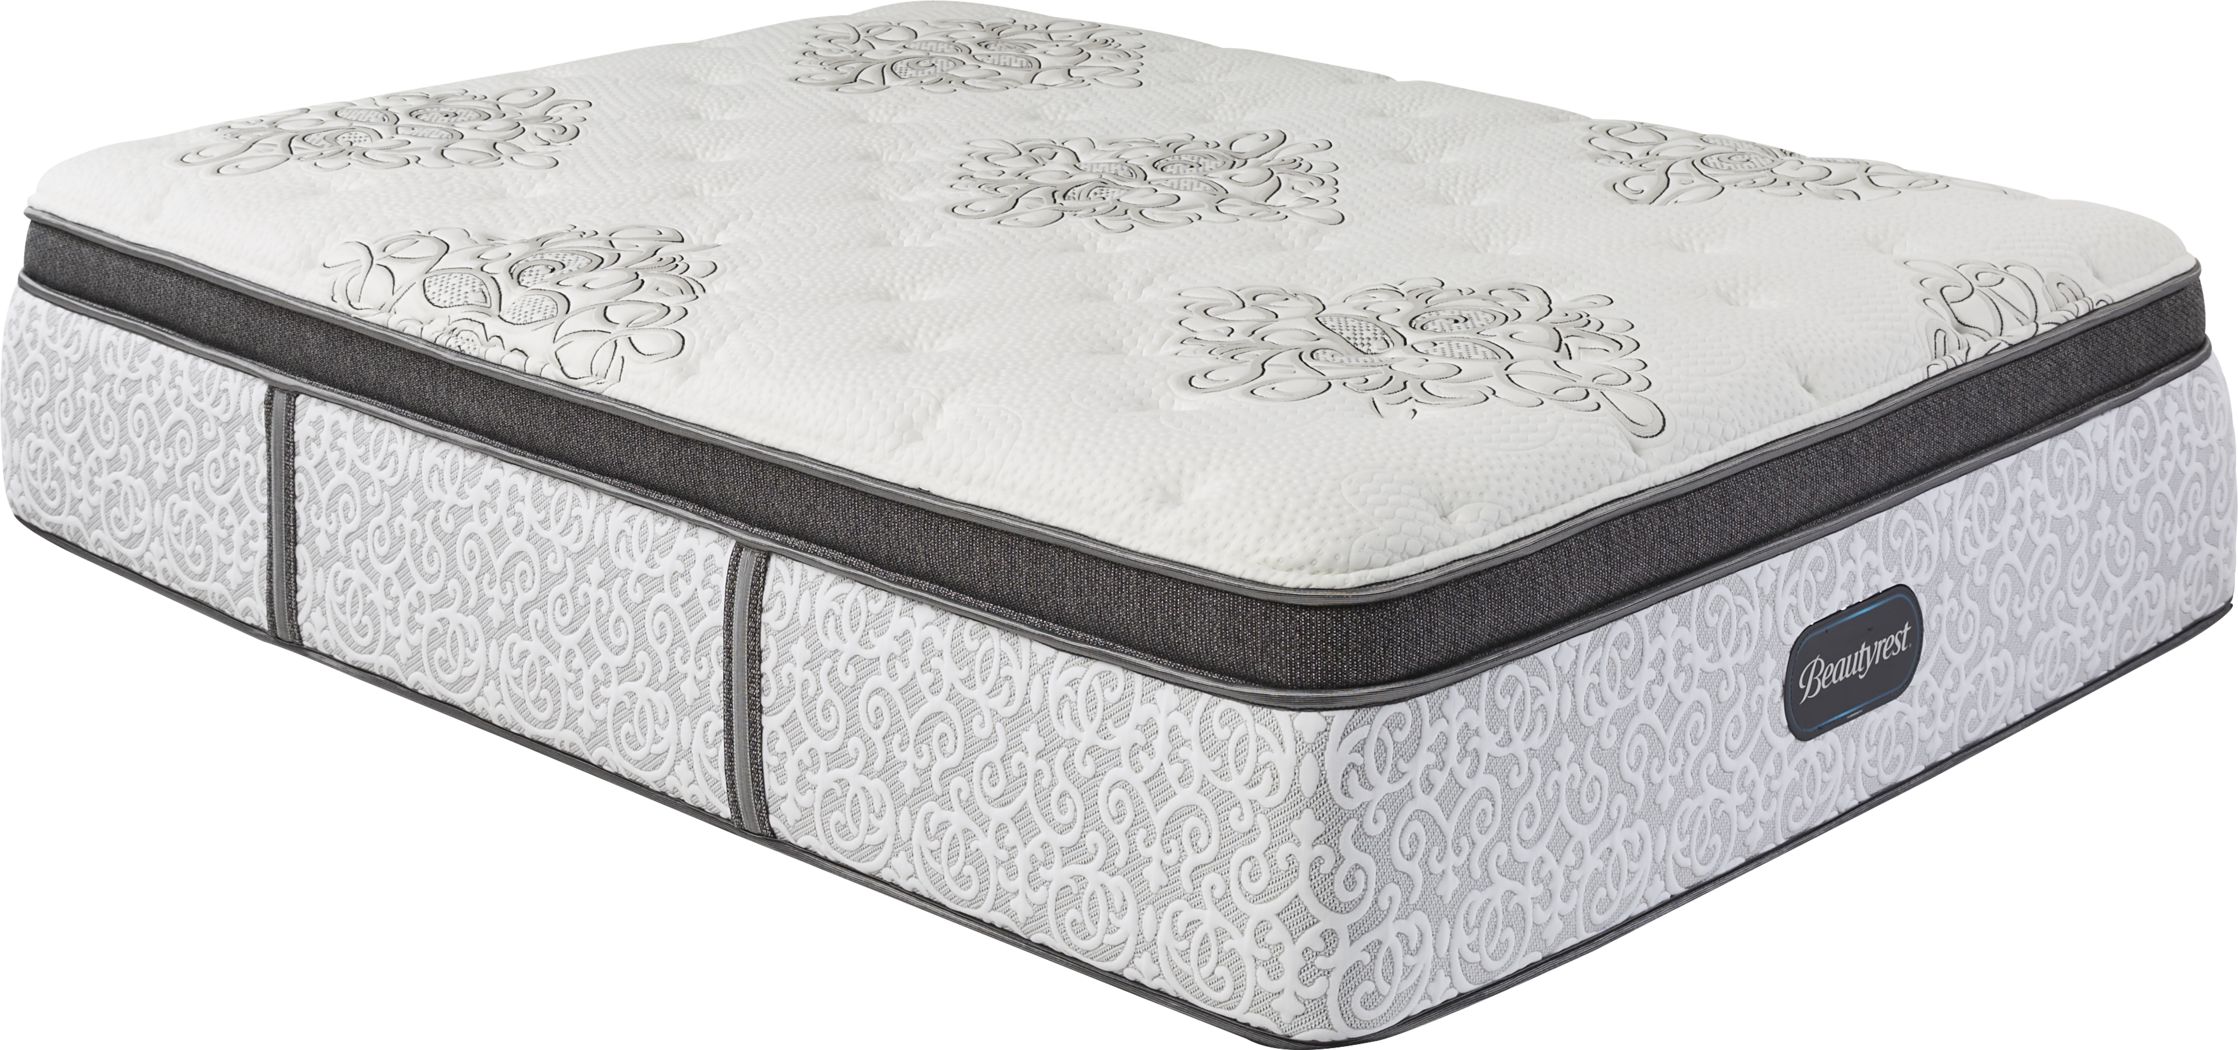 beautyrest legend plush mattress reviews